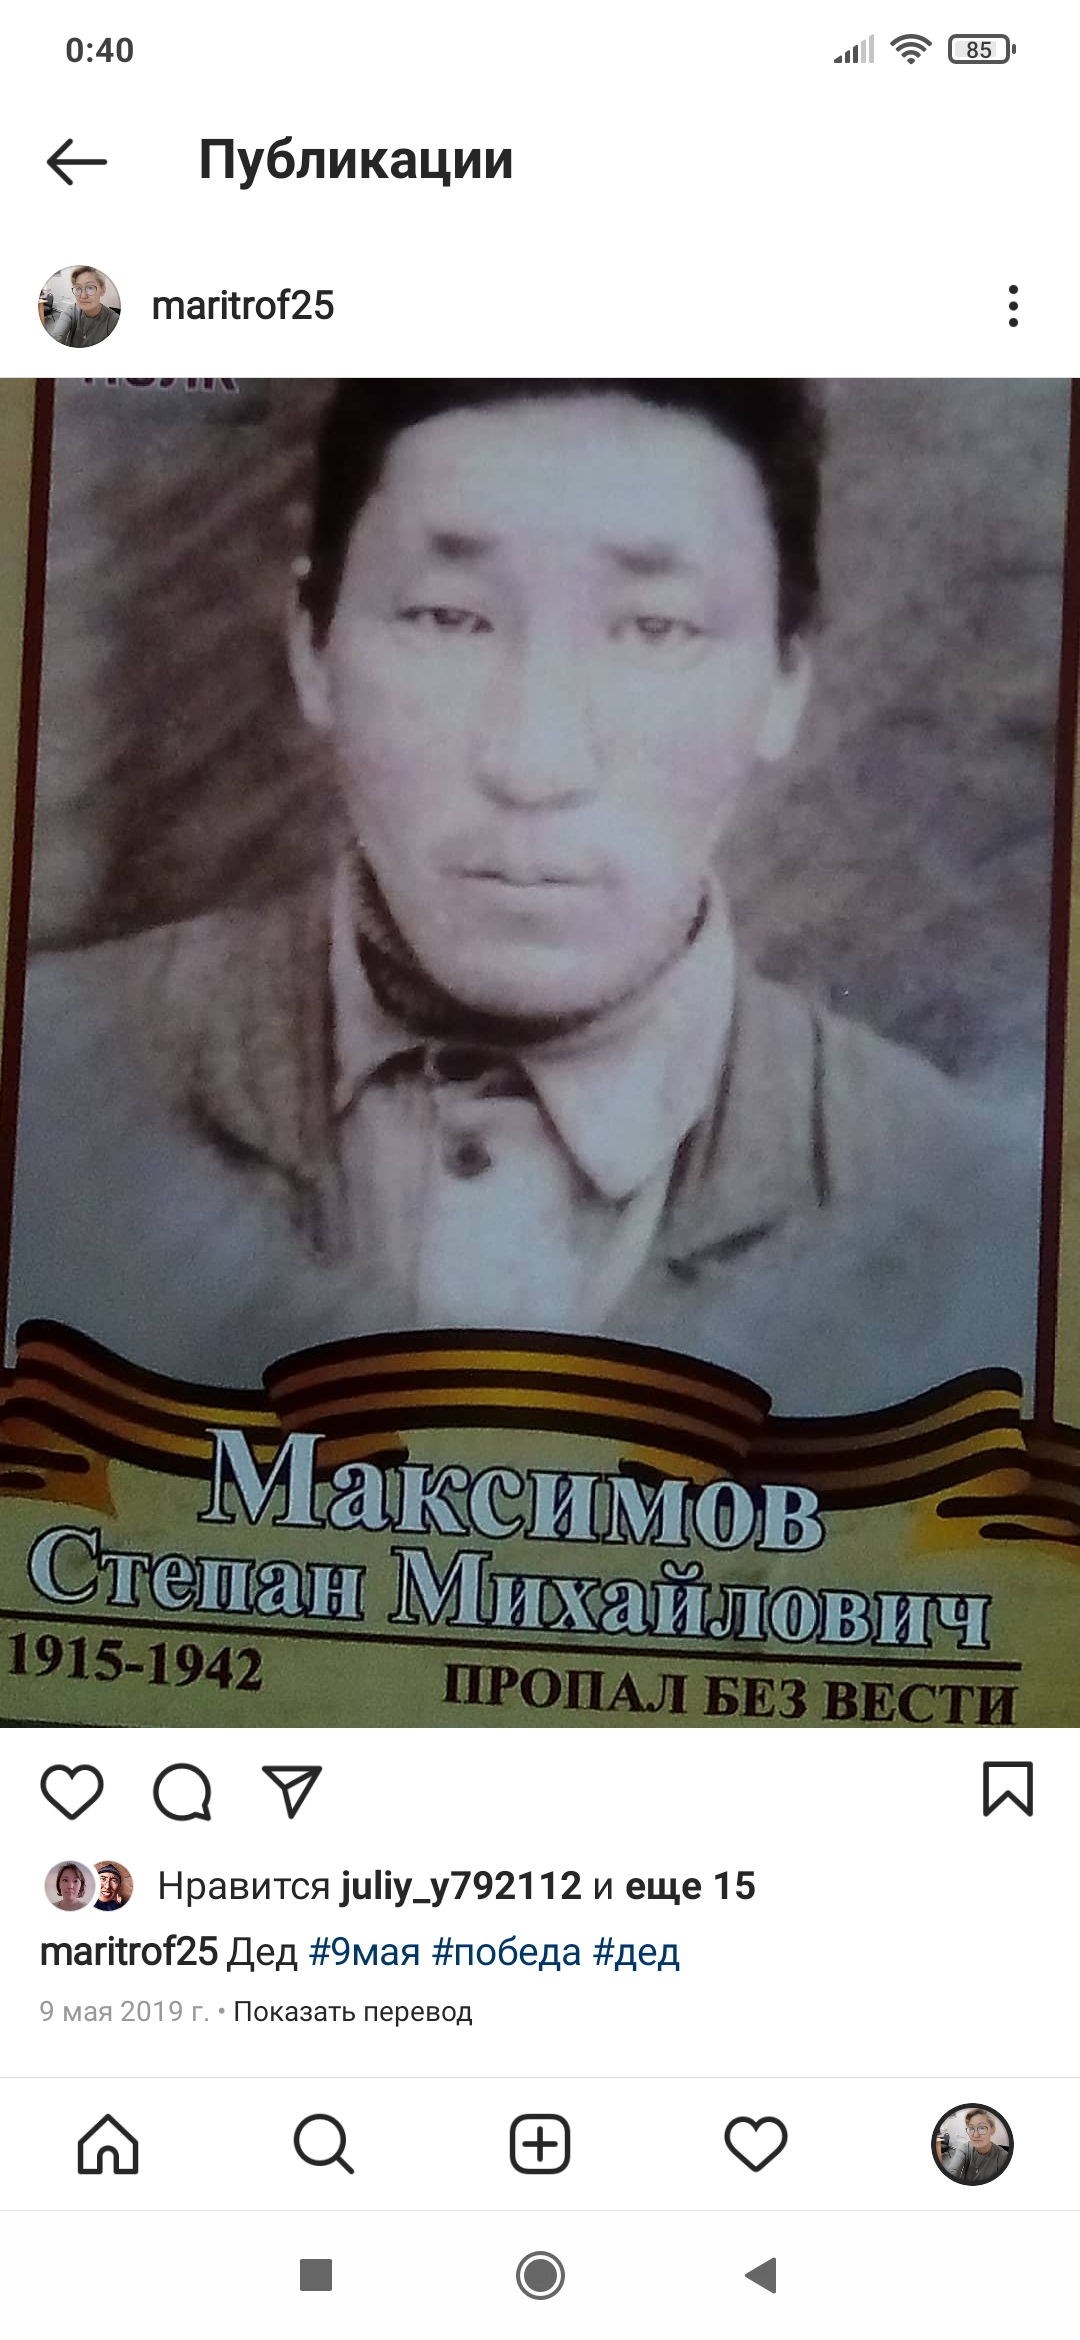 Максимов Степан Михайлович